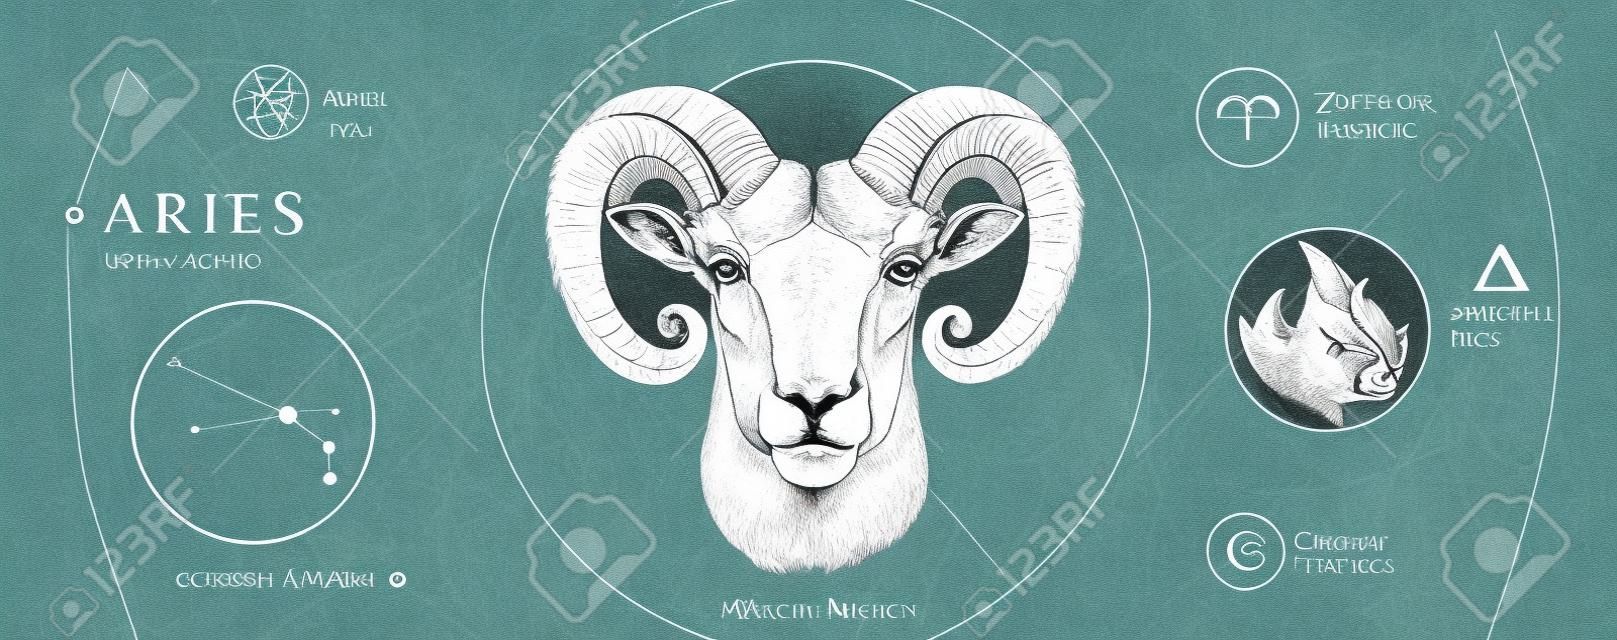 점성술 양자리 조디악 표지판이 있는 현대 마법의 마법 카드. 현실적인 손 그리기 ram 또는 mouflon 머리. 조디악 특성